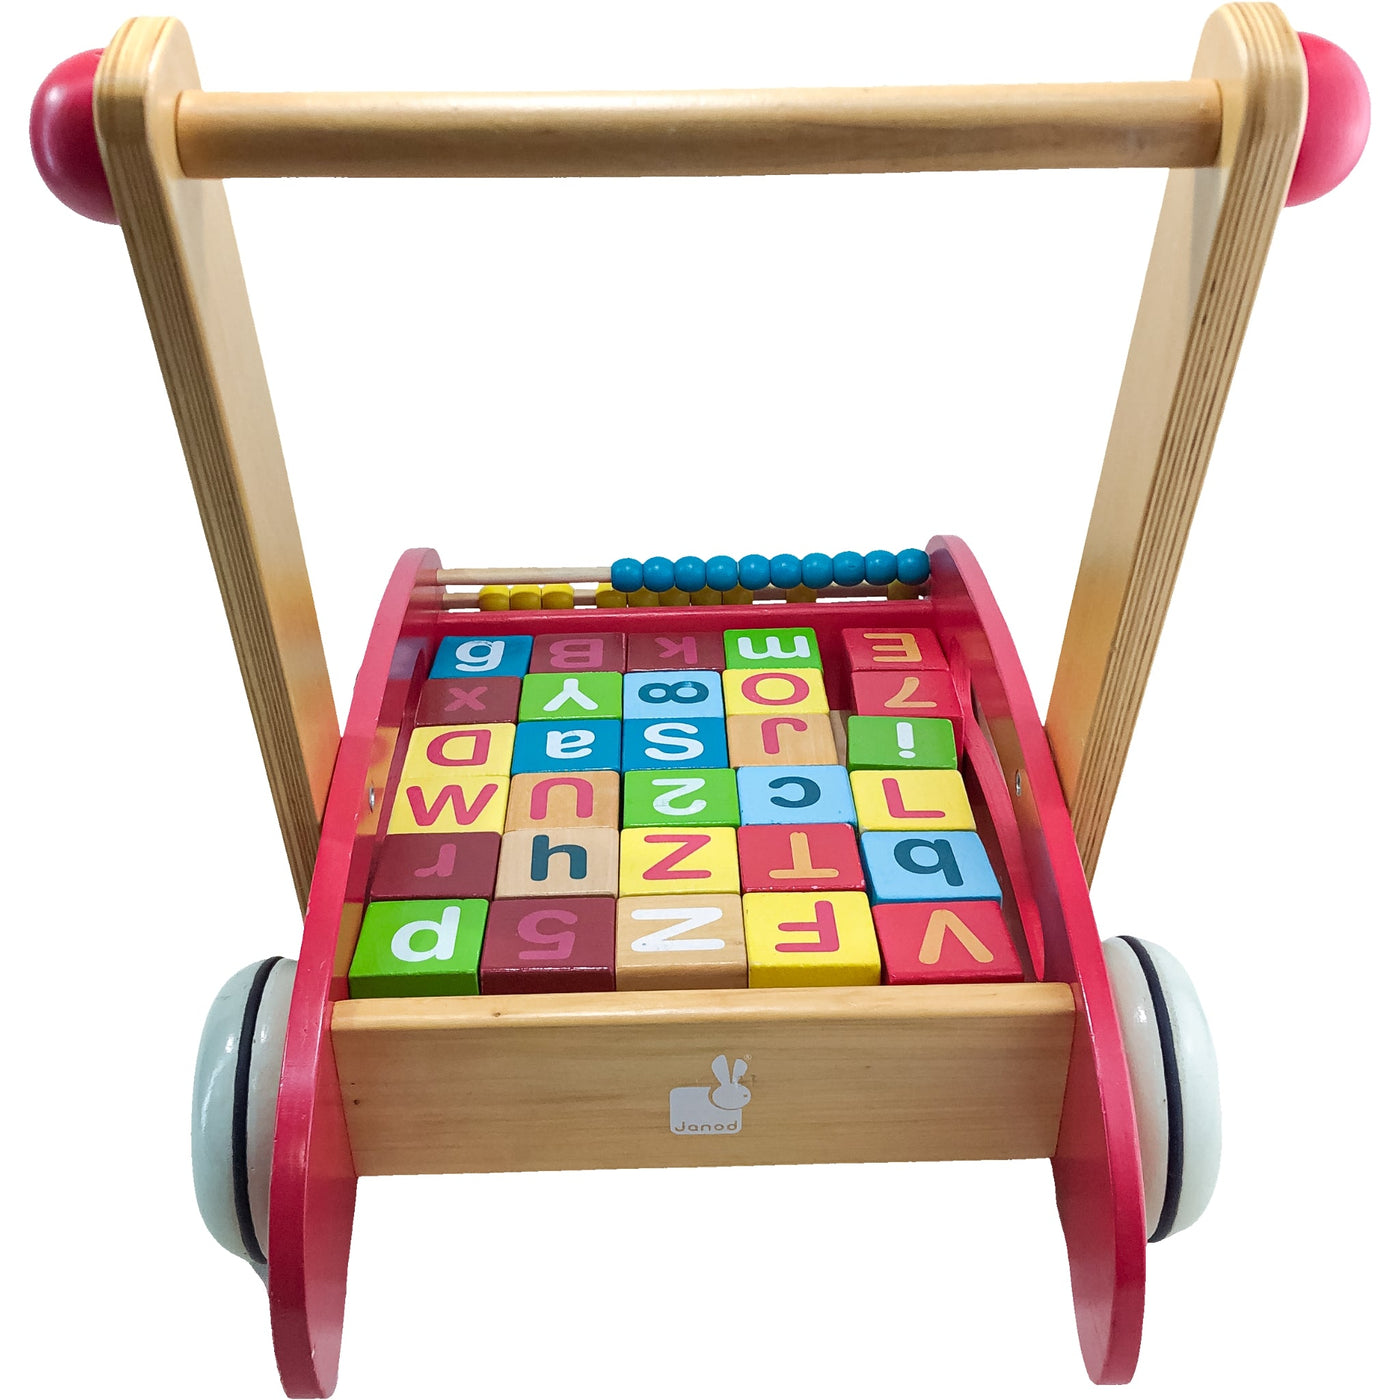 Chariot de marche "Chariot ABC Buggy Tatoo" de seconde main en bois pour enfant à partir de 12 mois - Vue 5